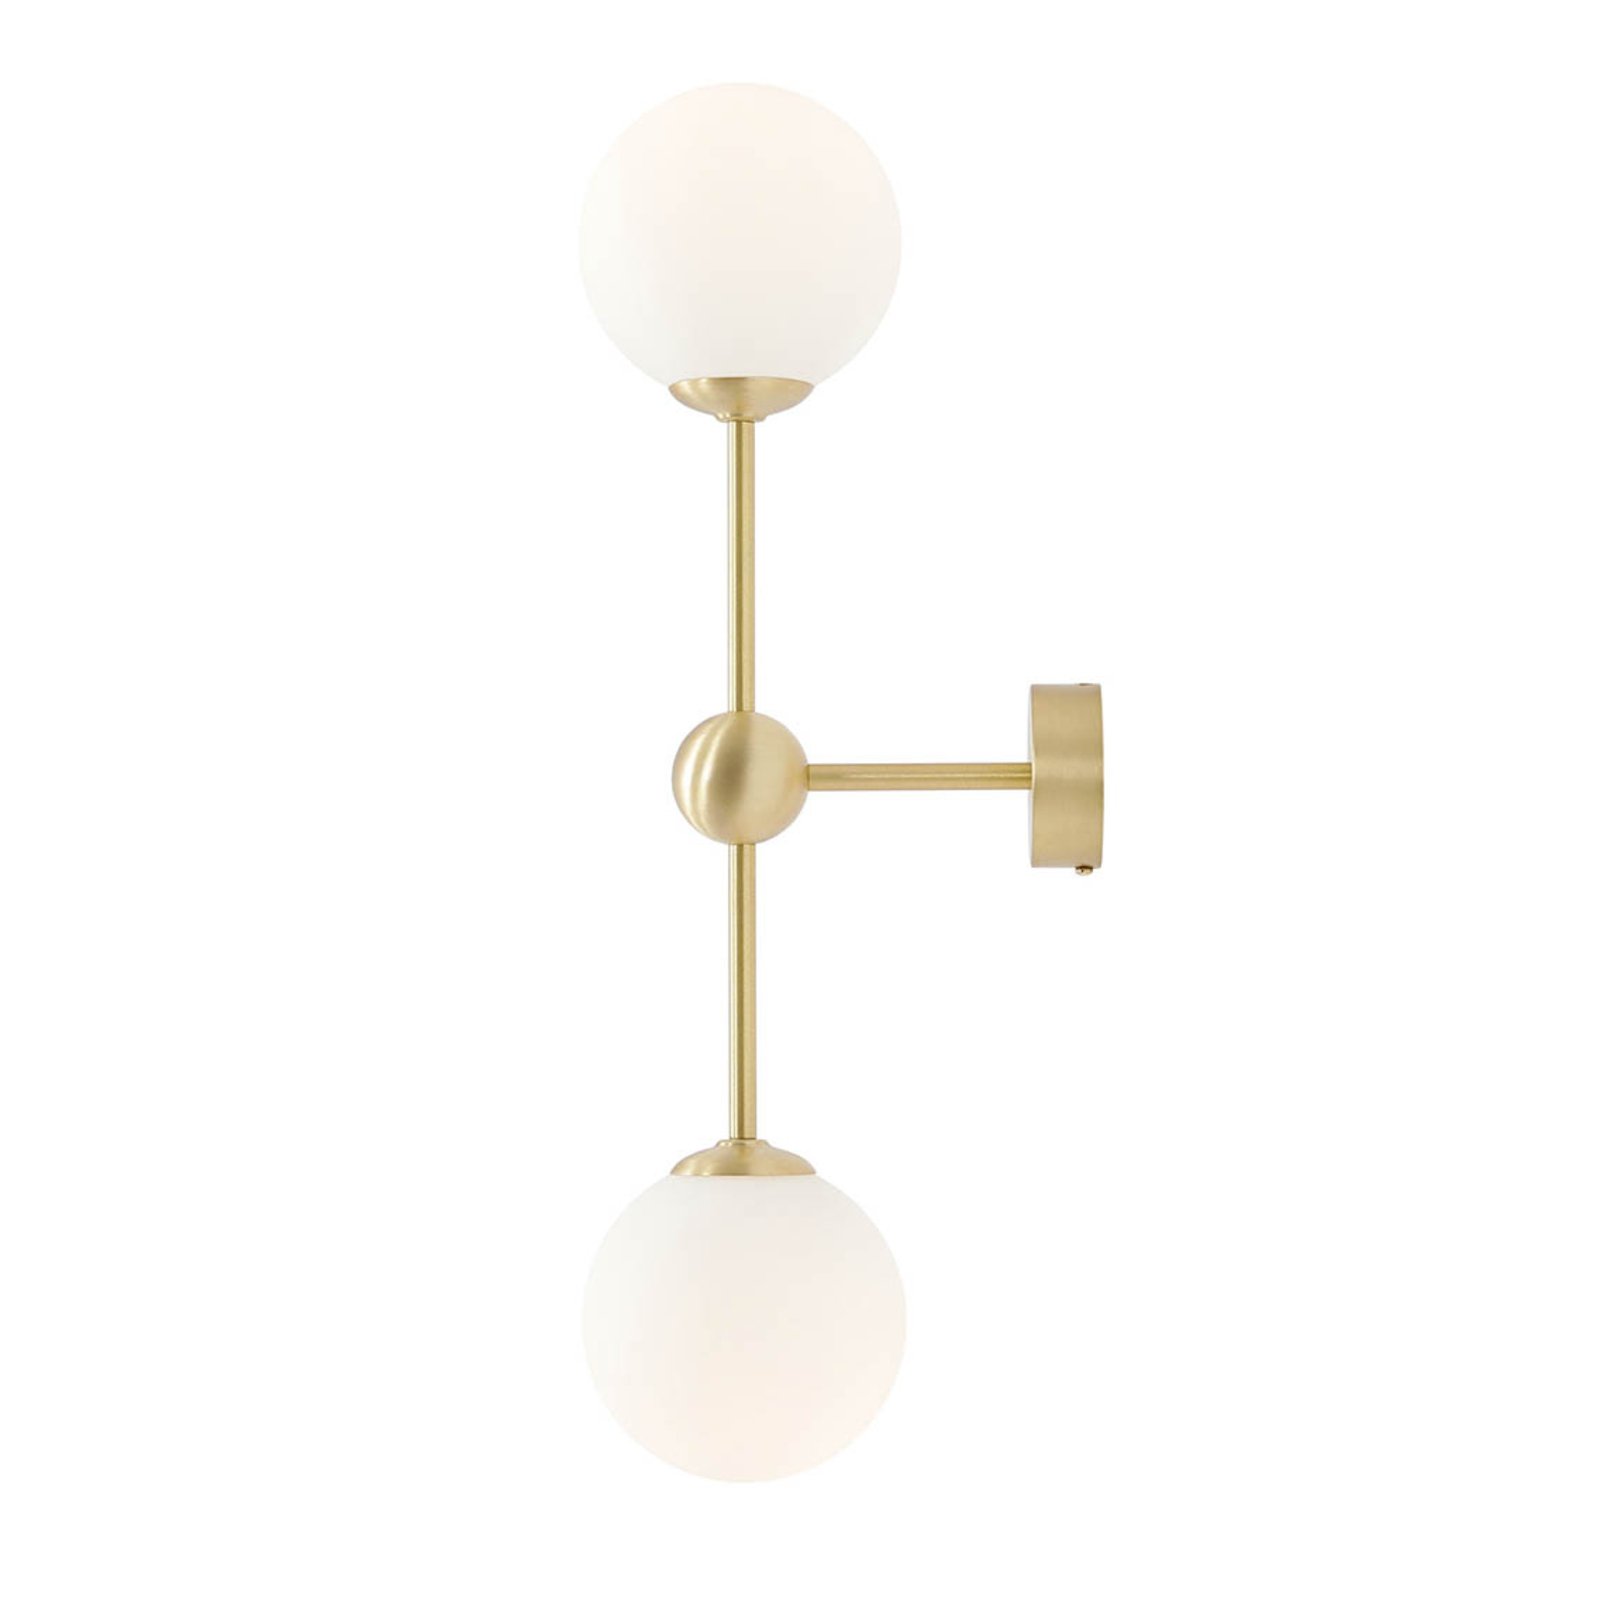 Alison wall light, 2-bulb, brass/white, 59cm